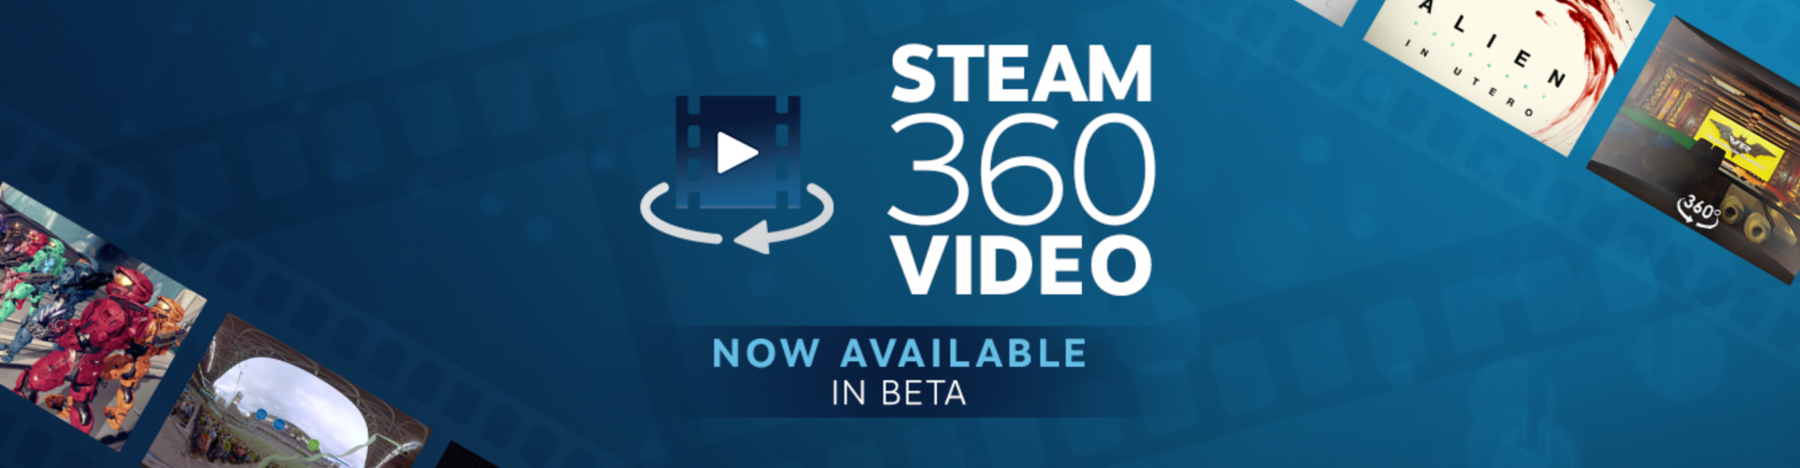 Valve-Steam-360-VR-Pixvana